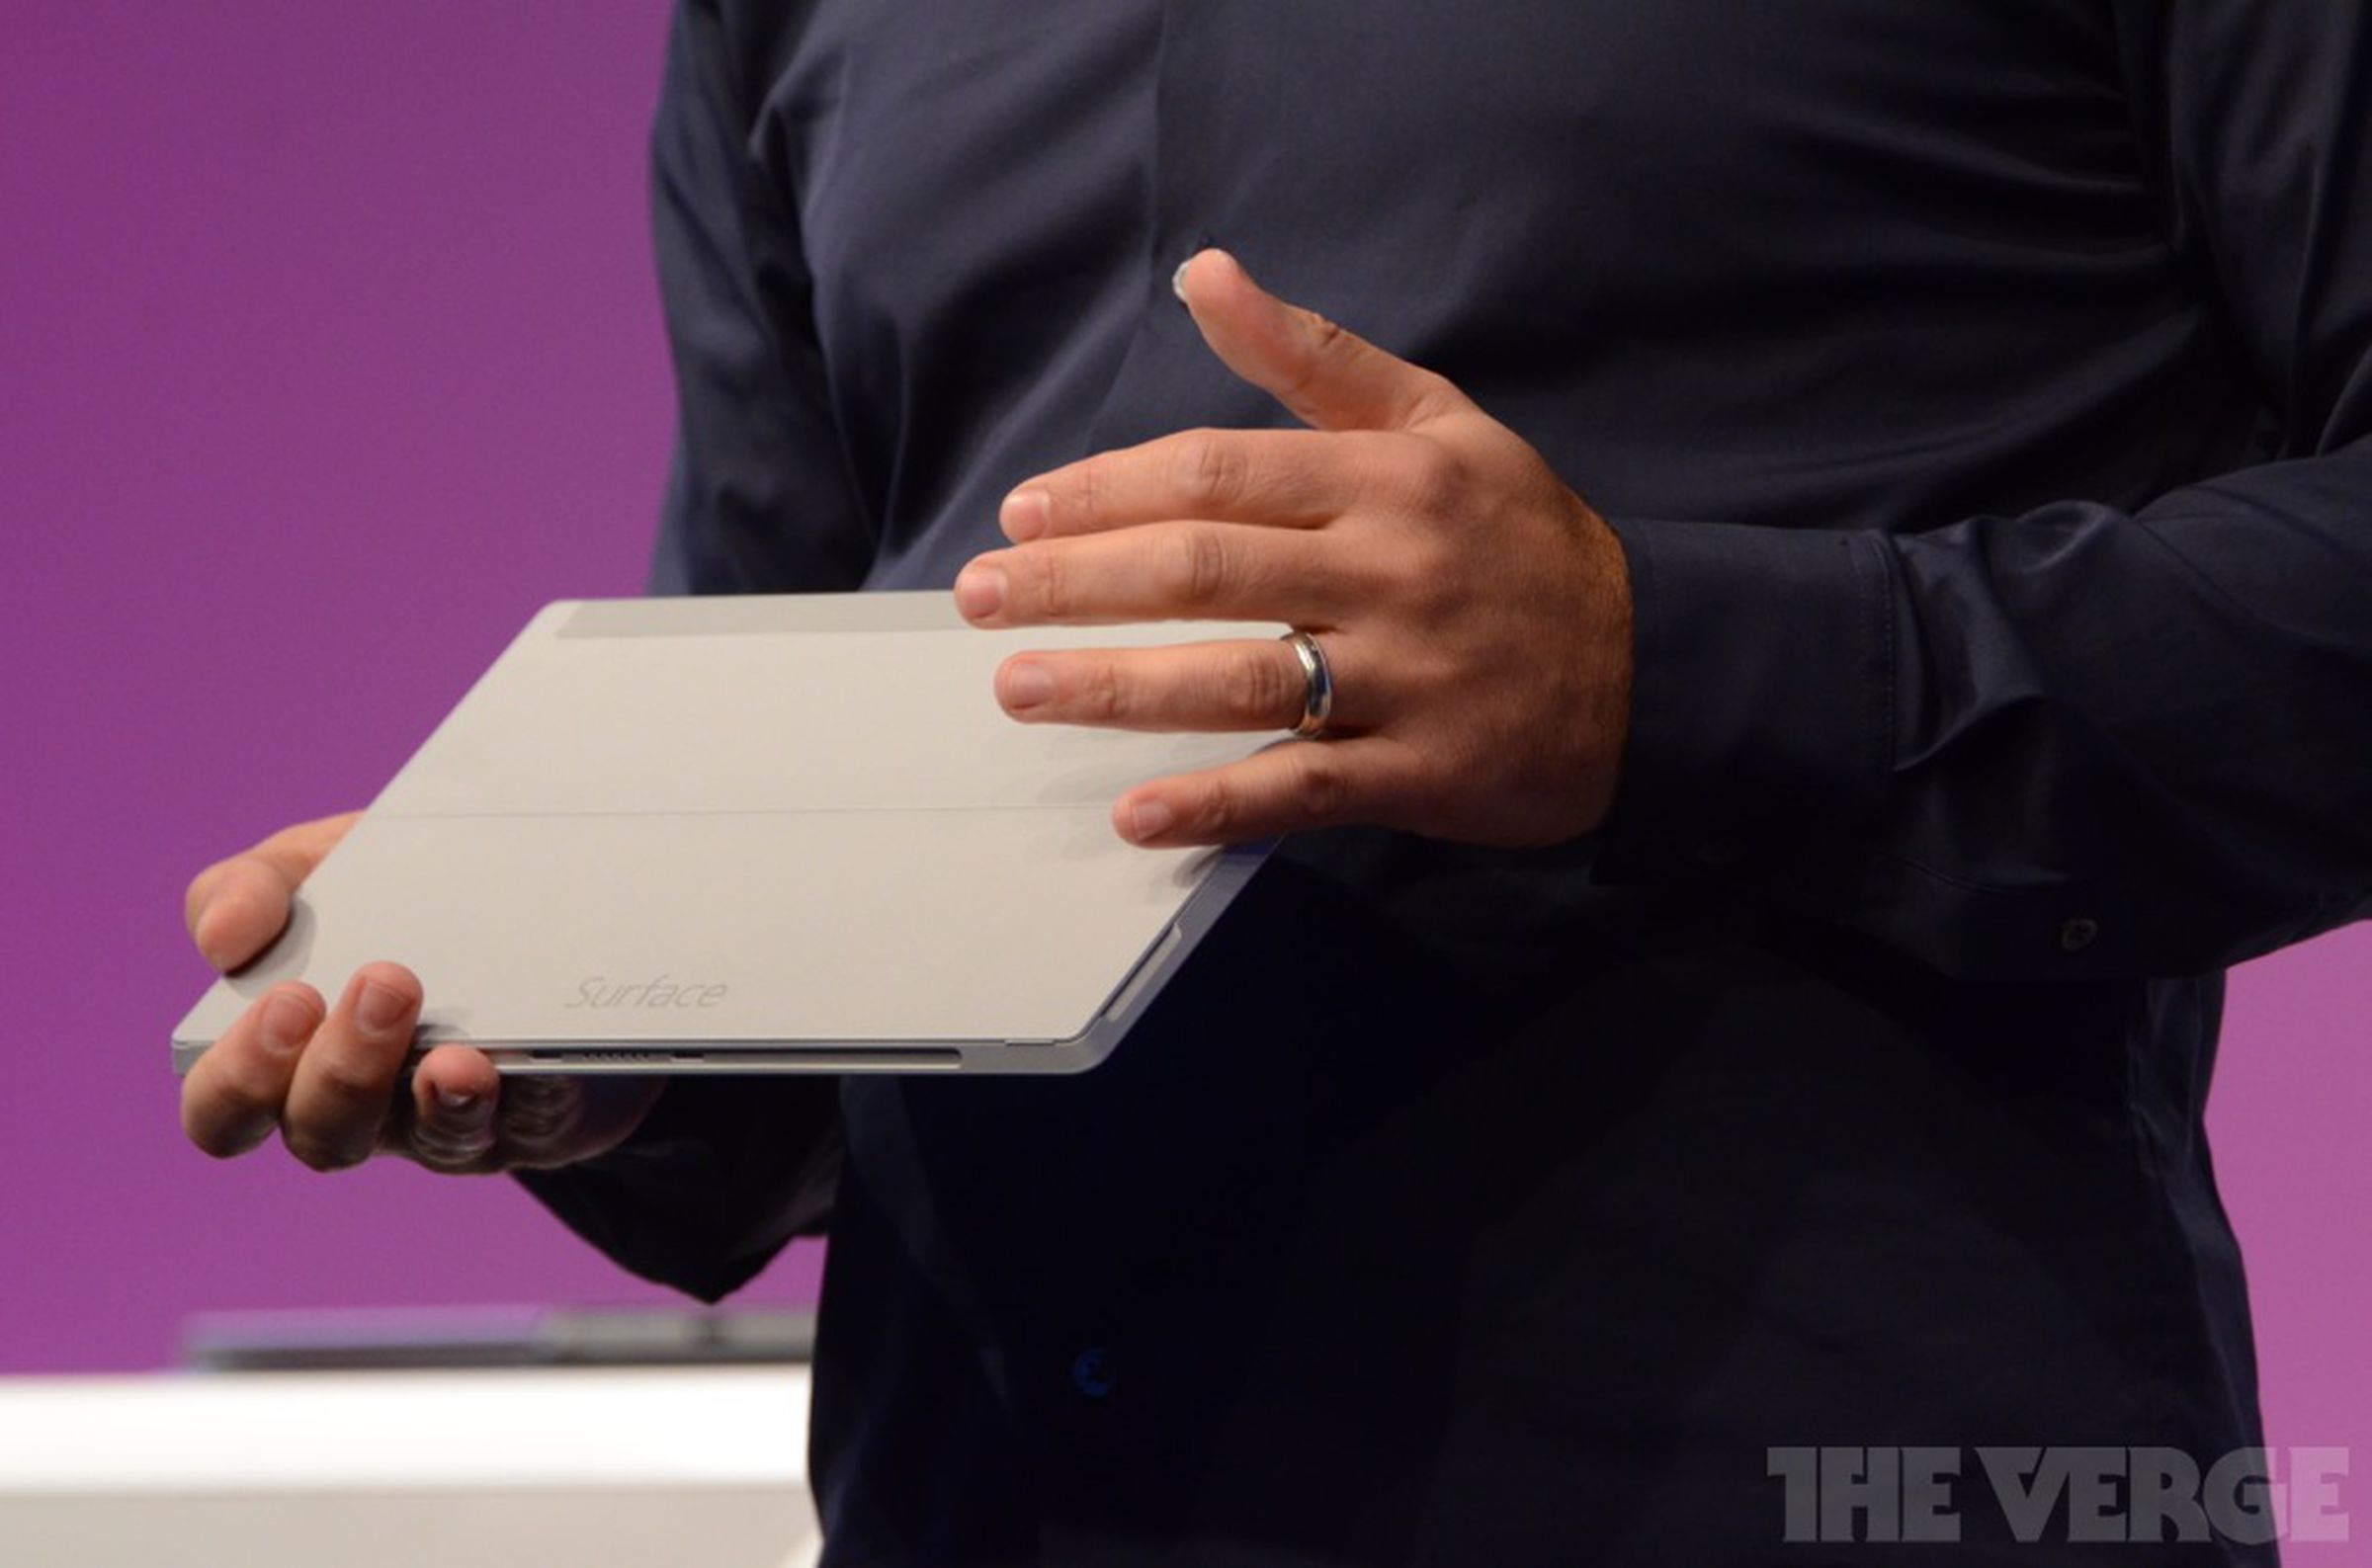 Microsoft Surface 2 announce photos